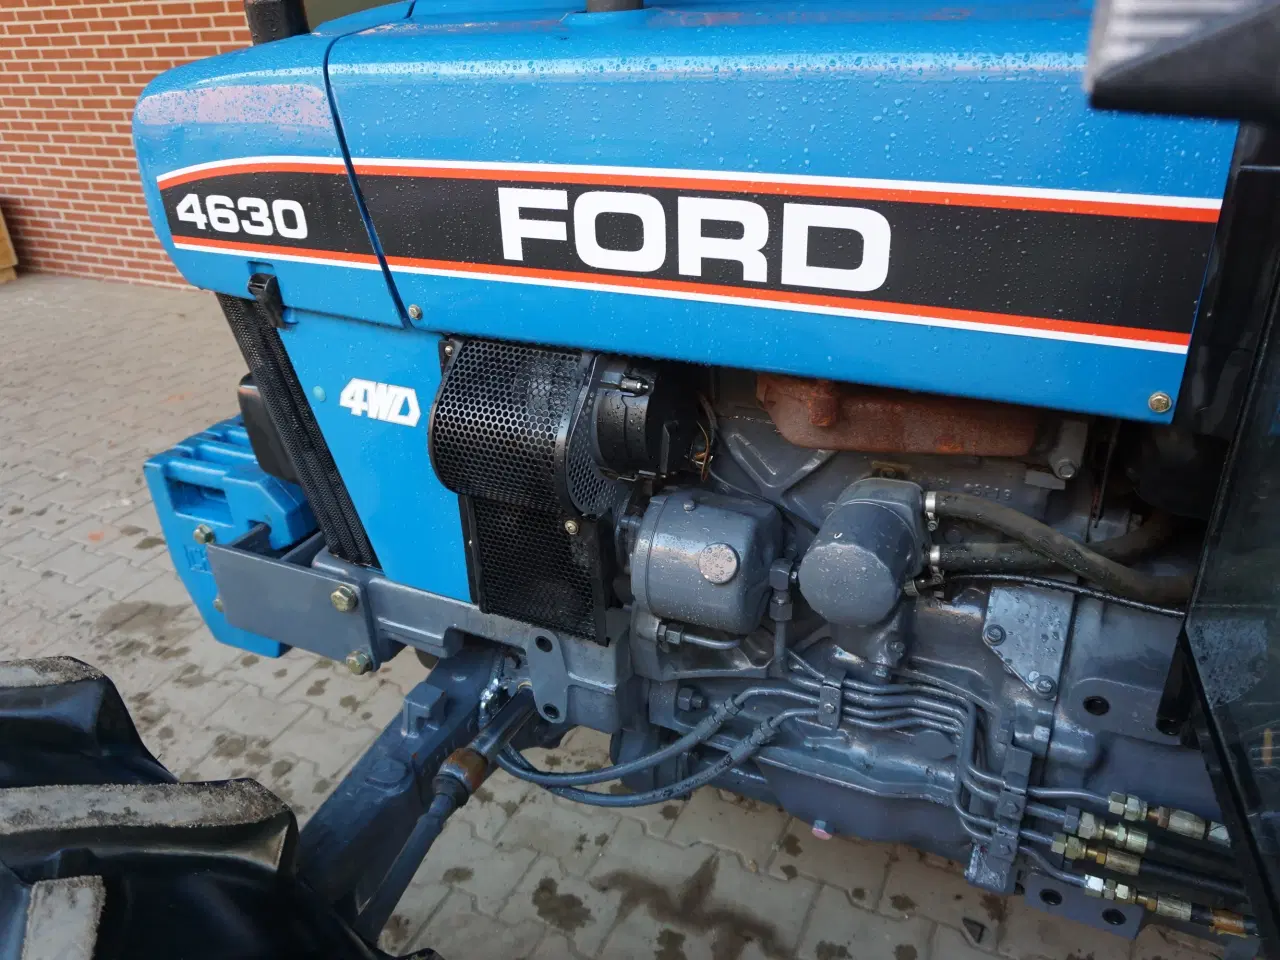 Billede 9 - New Holland Ford 4630 med kun 86 timer fra ny!